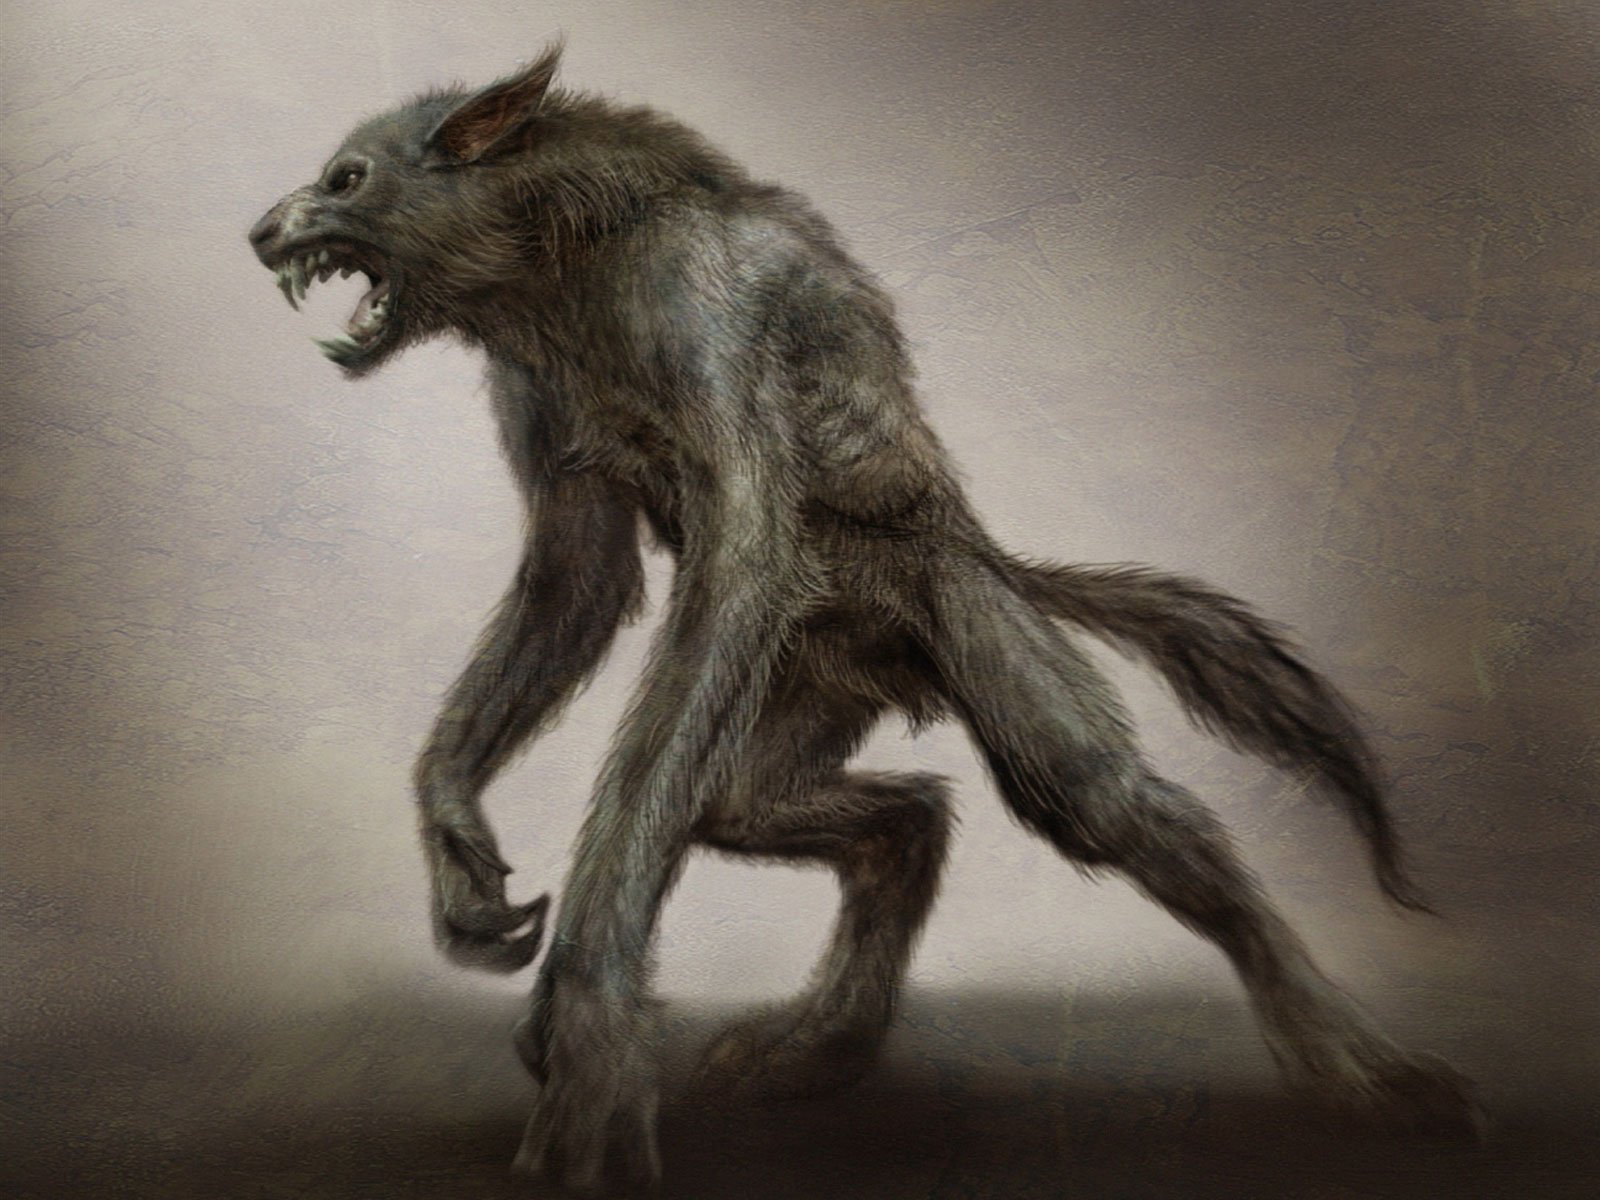 Hombre Lobo - Werewolf On Two Legs - HD Wallpaper 